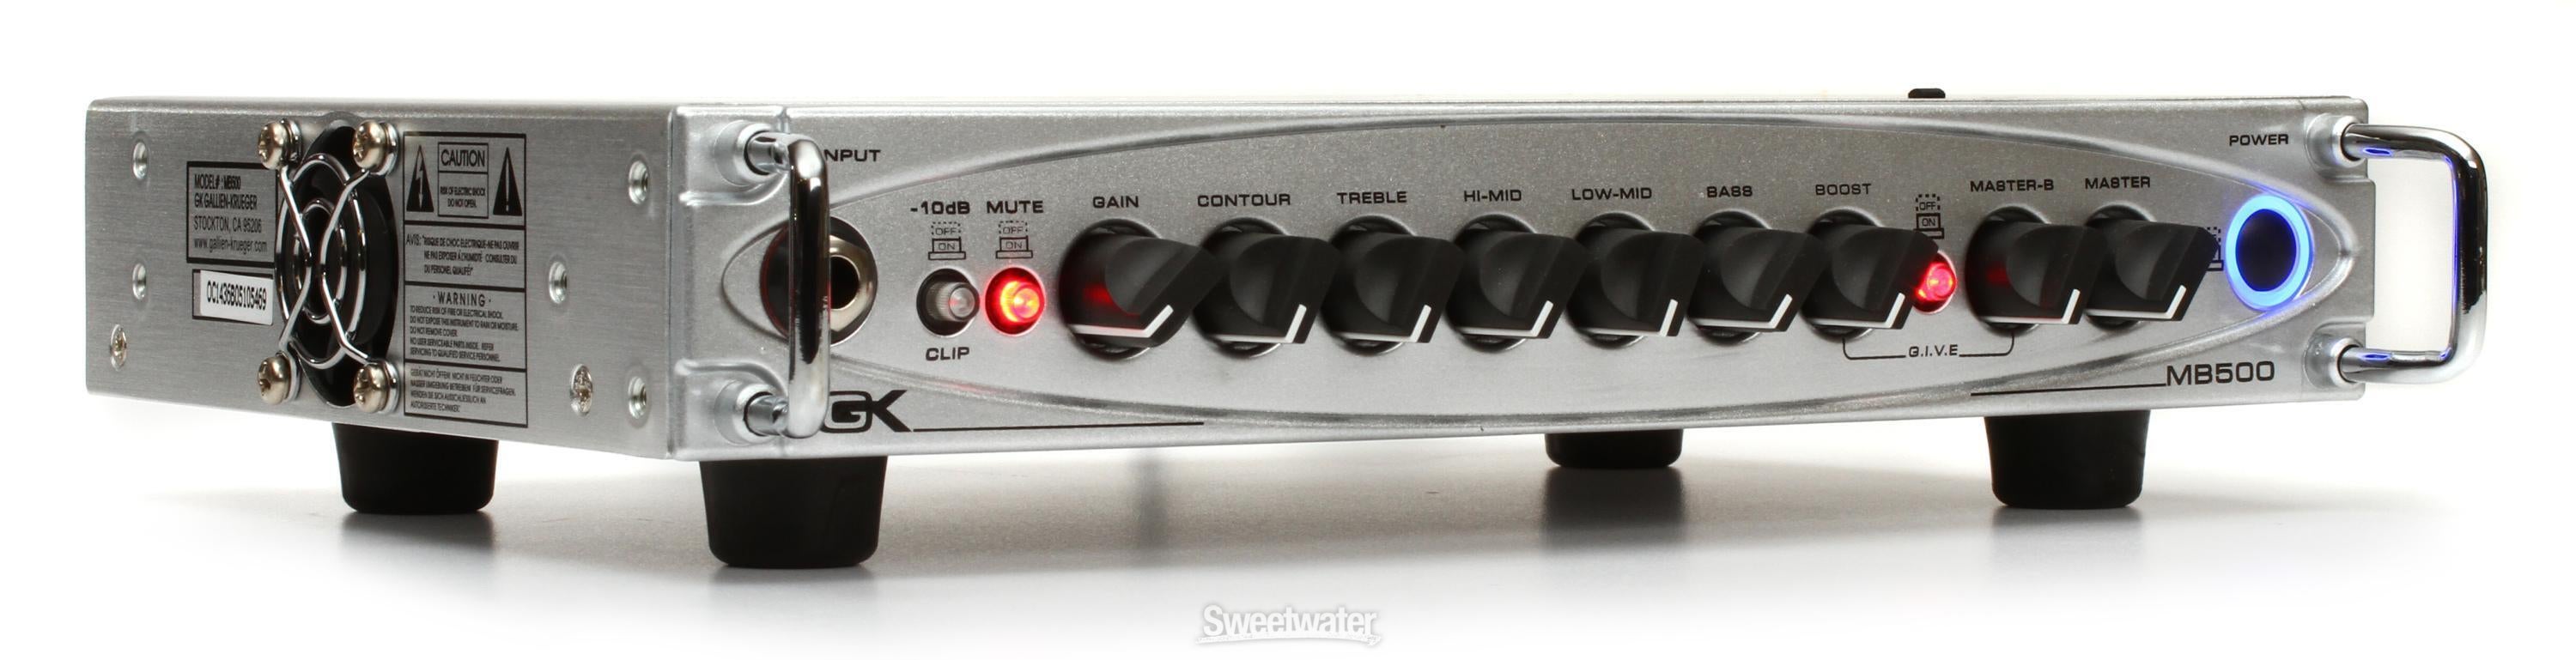 Gallien-Krueger MB500 500-Watt Ultra Light Micro Bass Head Reviews